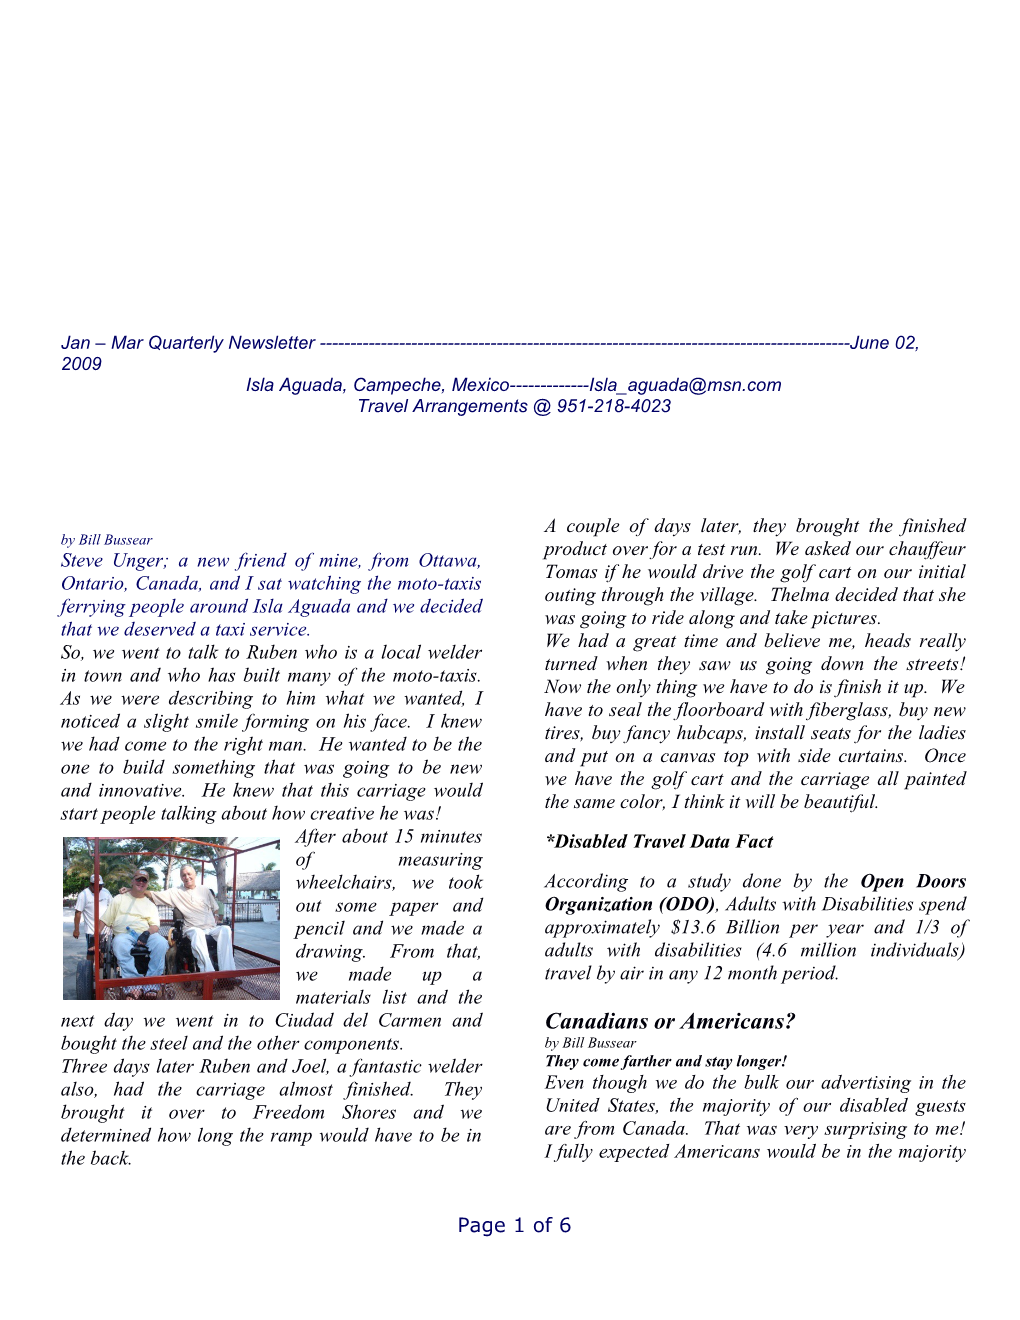 Jan Mar Quarterly Newsletter June 02, 2009